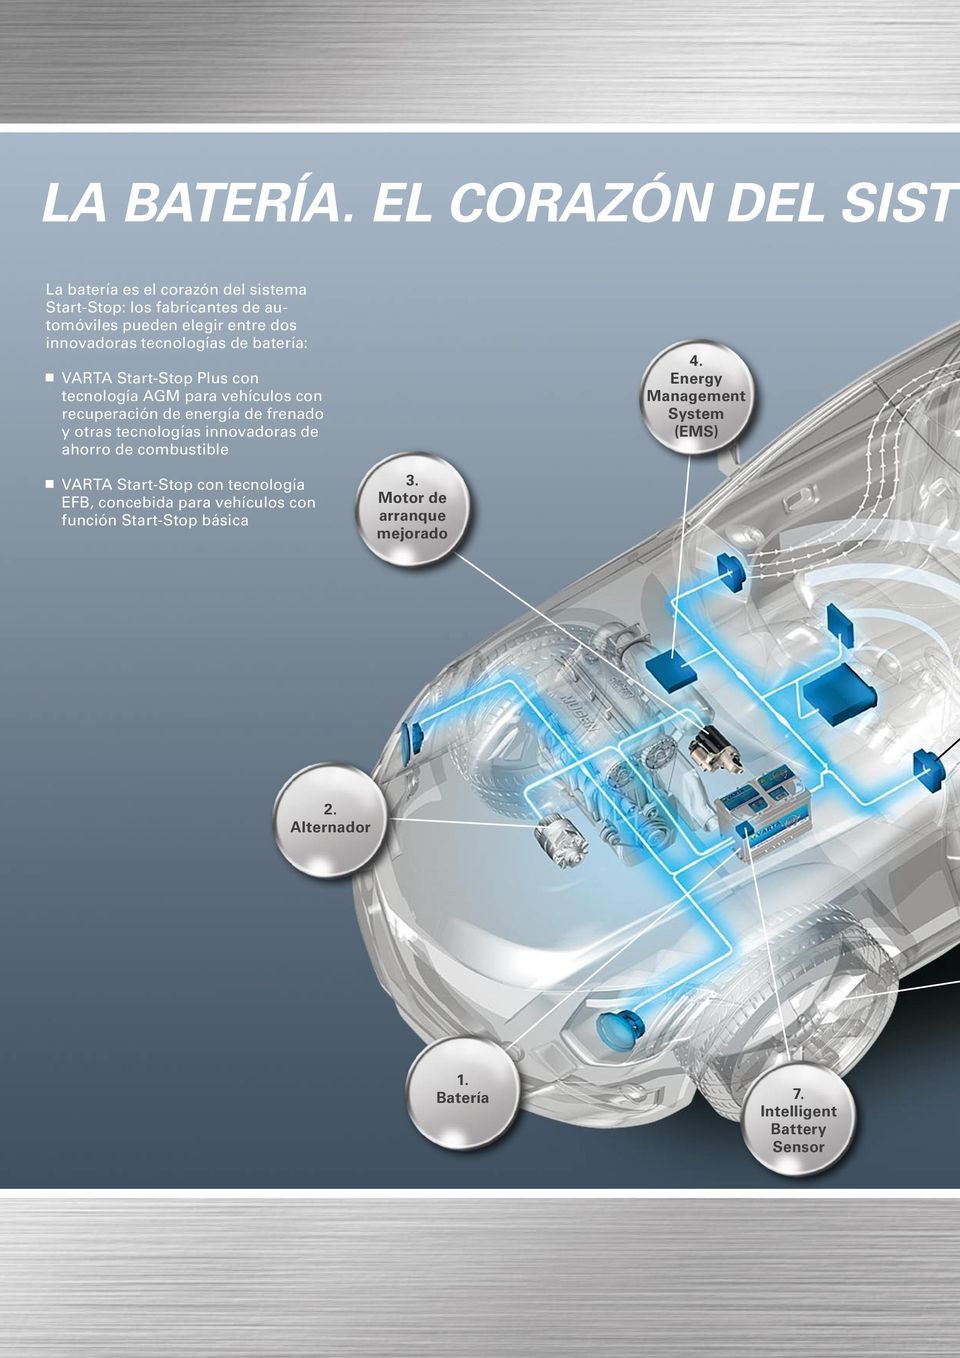 innovadoras tecnologías de batería: VARTA Start-Stop Plus con tecnología AGM para vehículos con recuperación de energía de frenado y